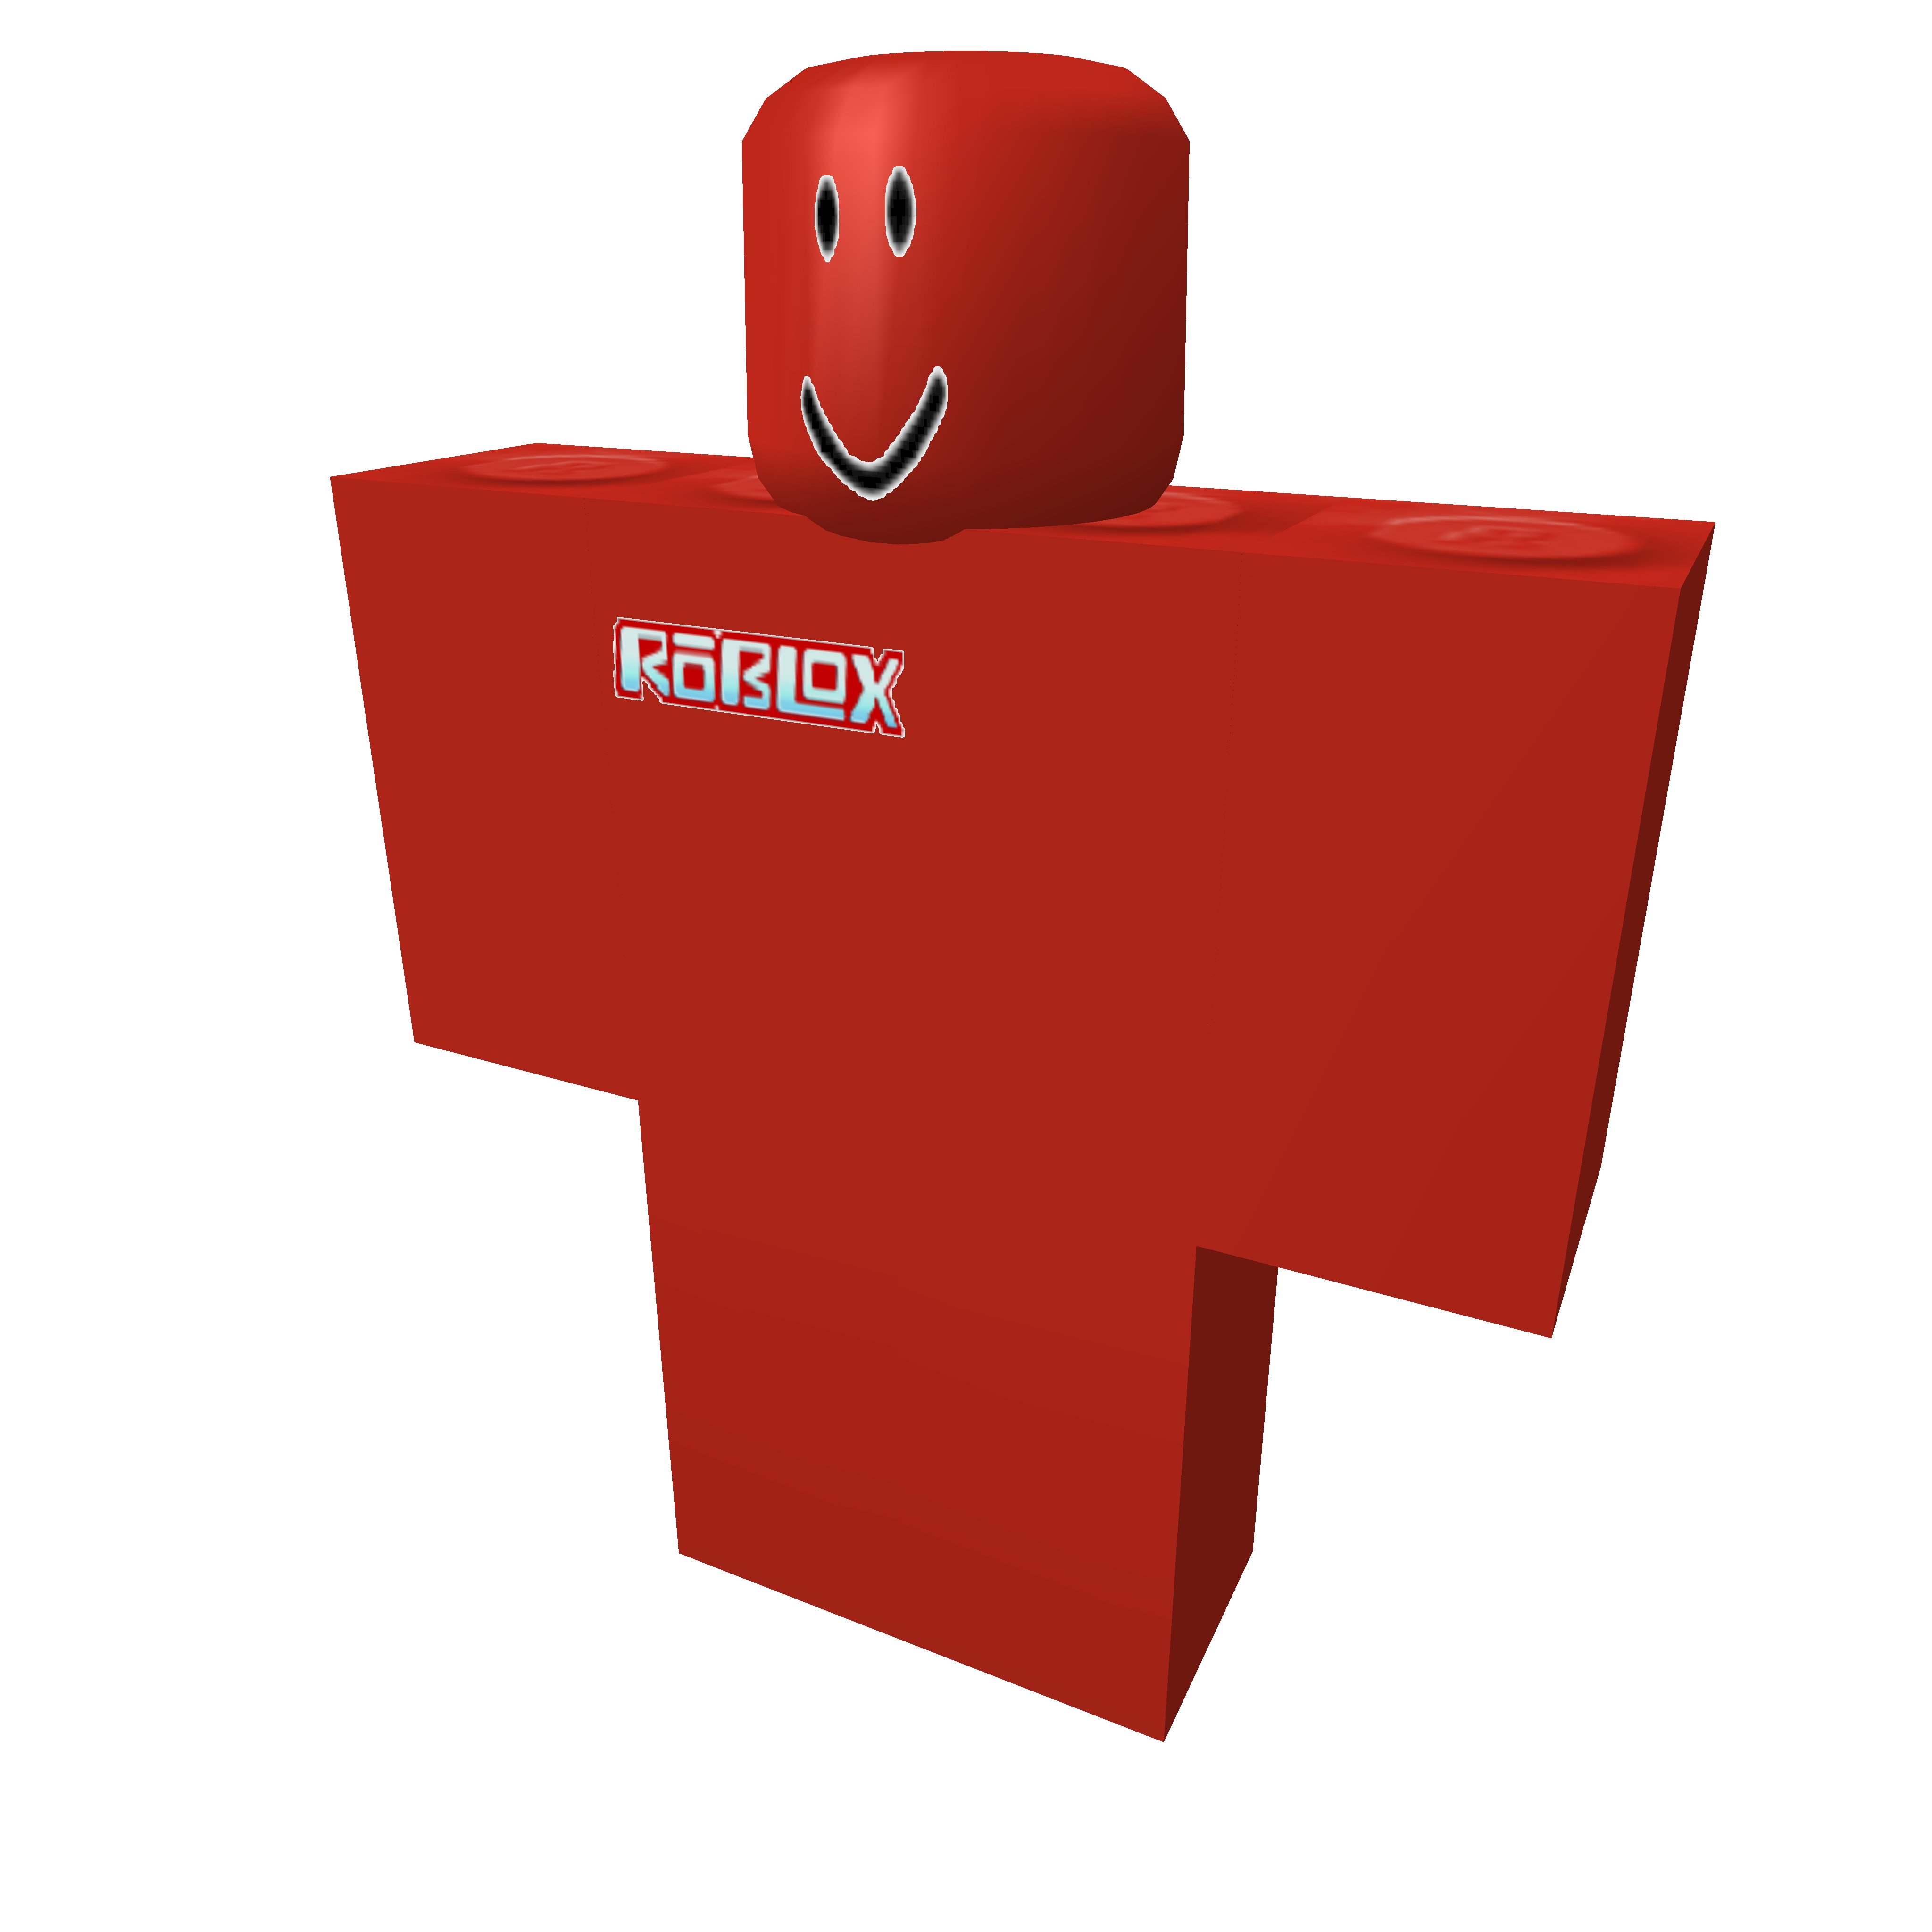 Roblox] - 2007 Client found!